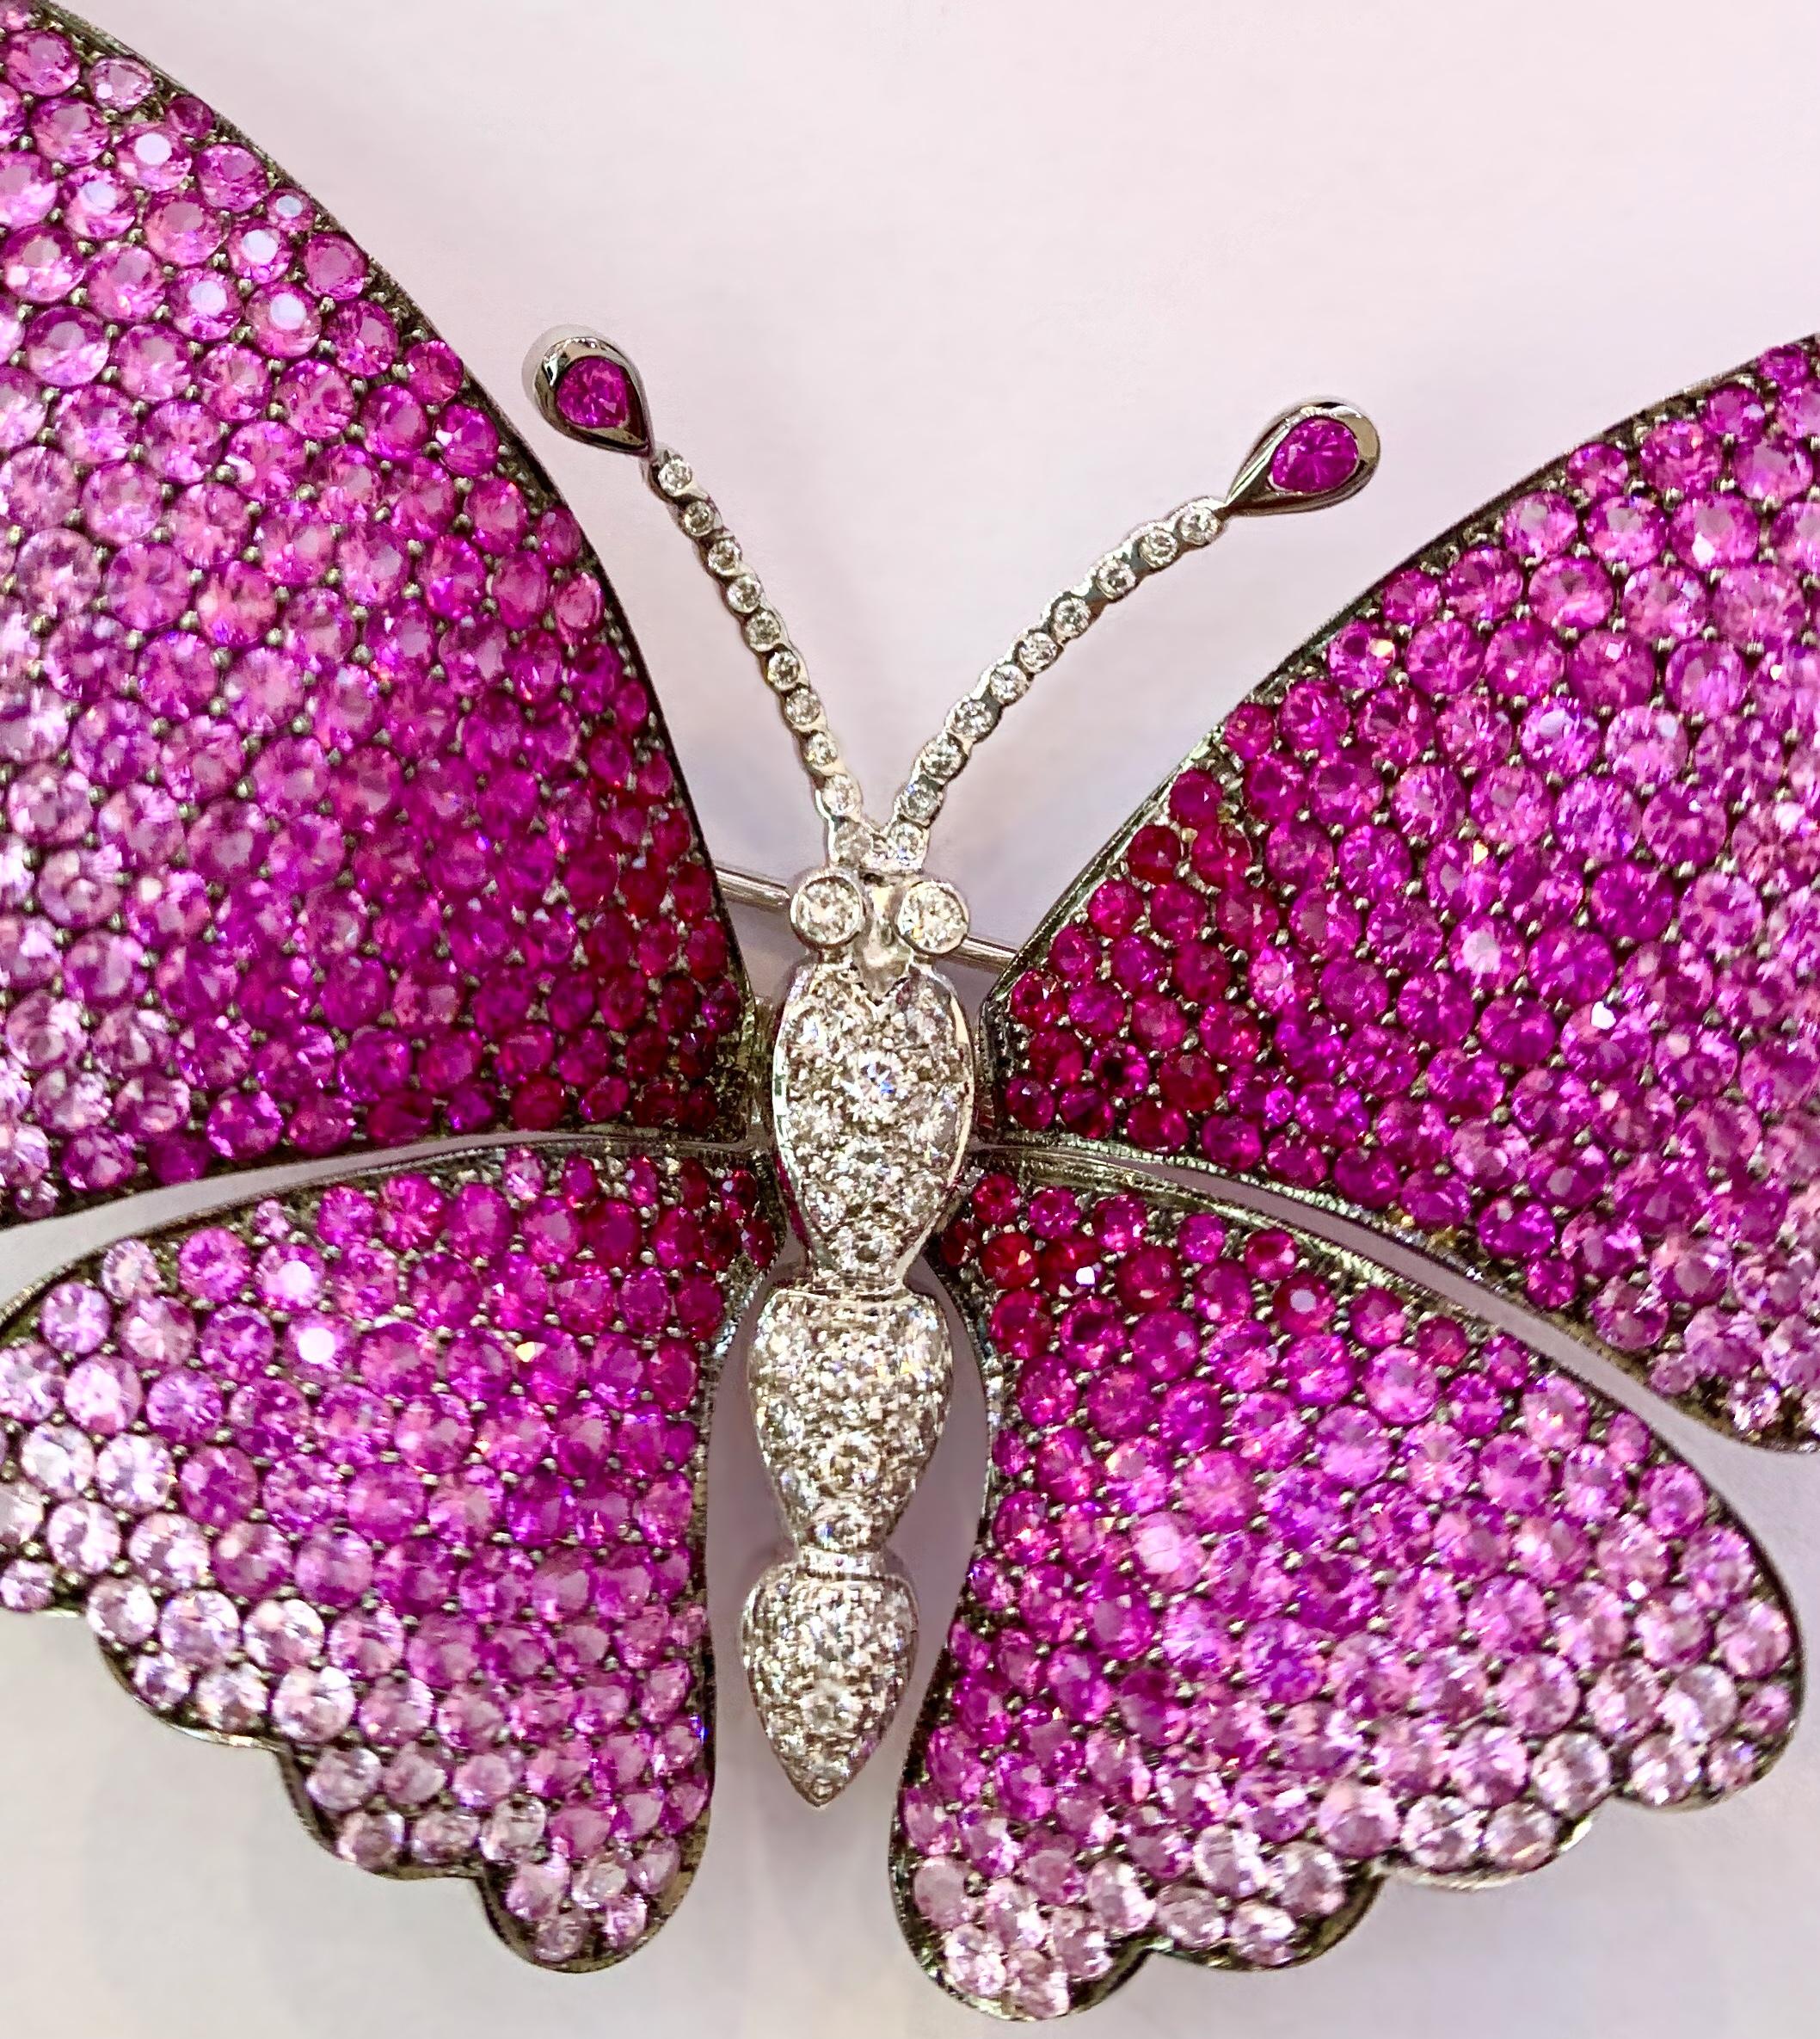 pink butterfly brooch